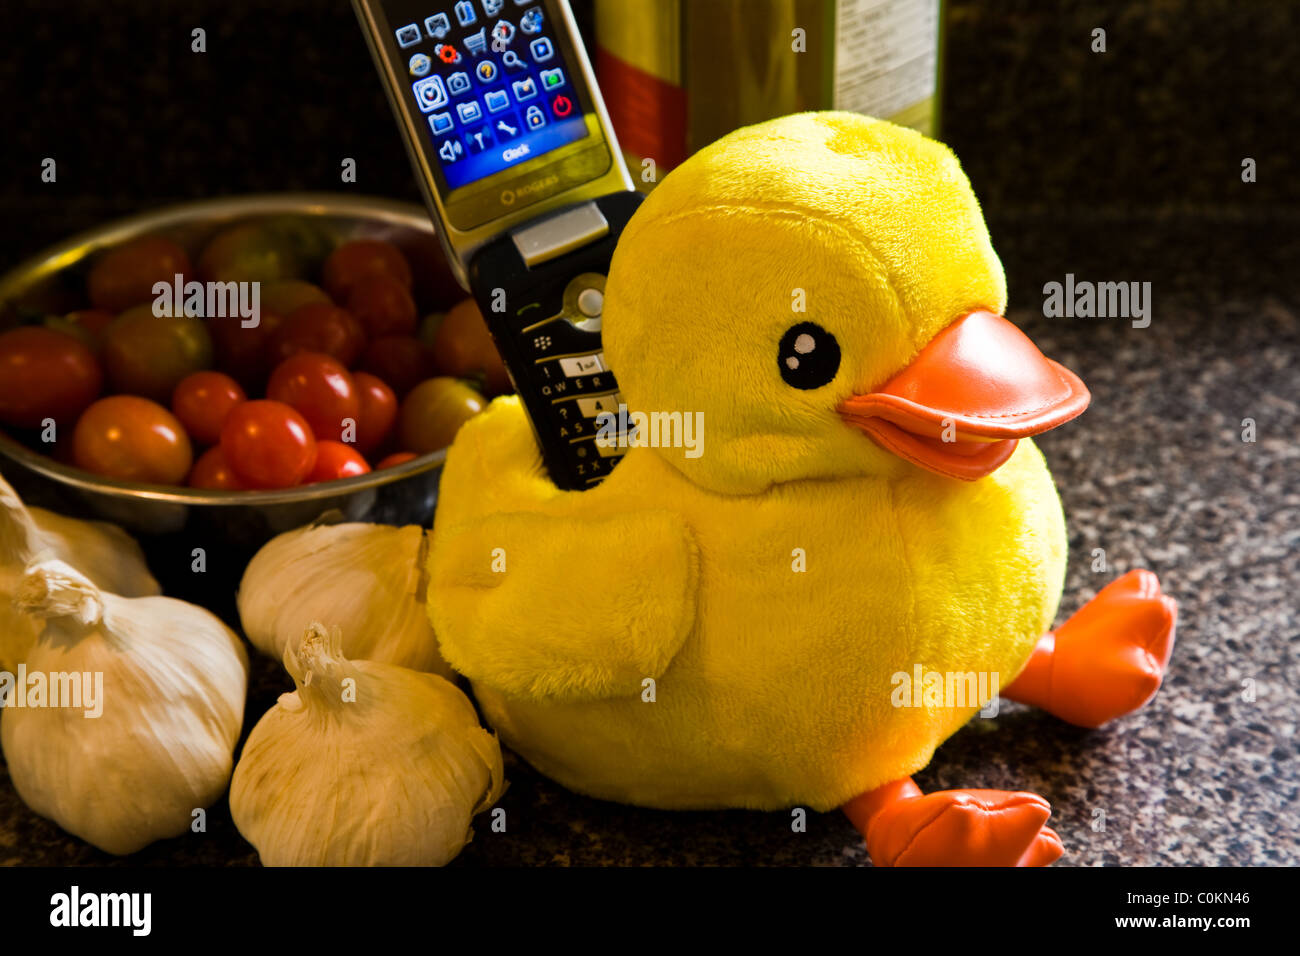 Un canard jaune avec une poche de tenir un téléphone mobile Banque D'Images